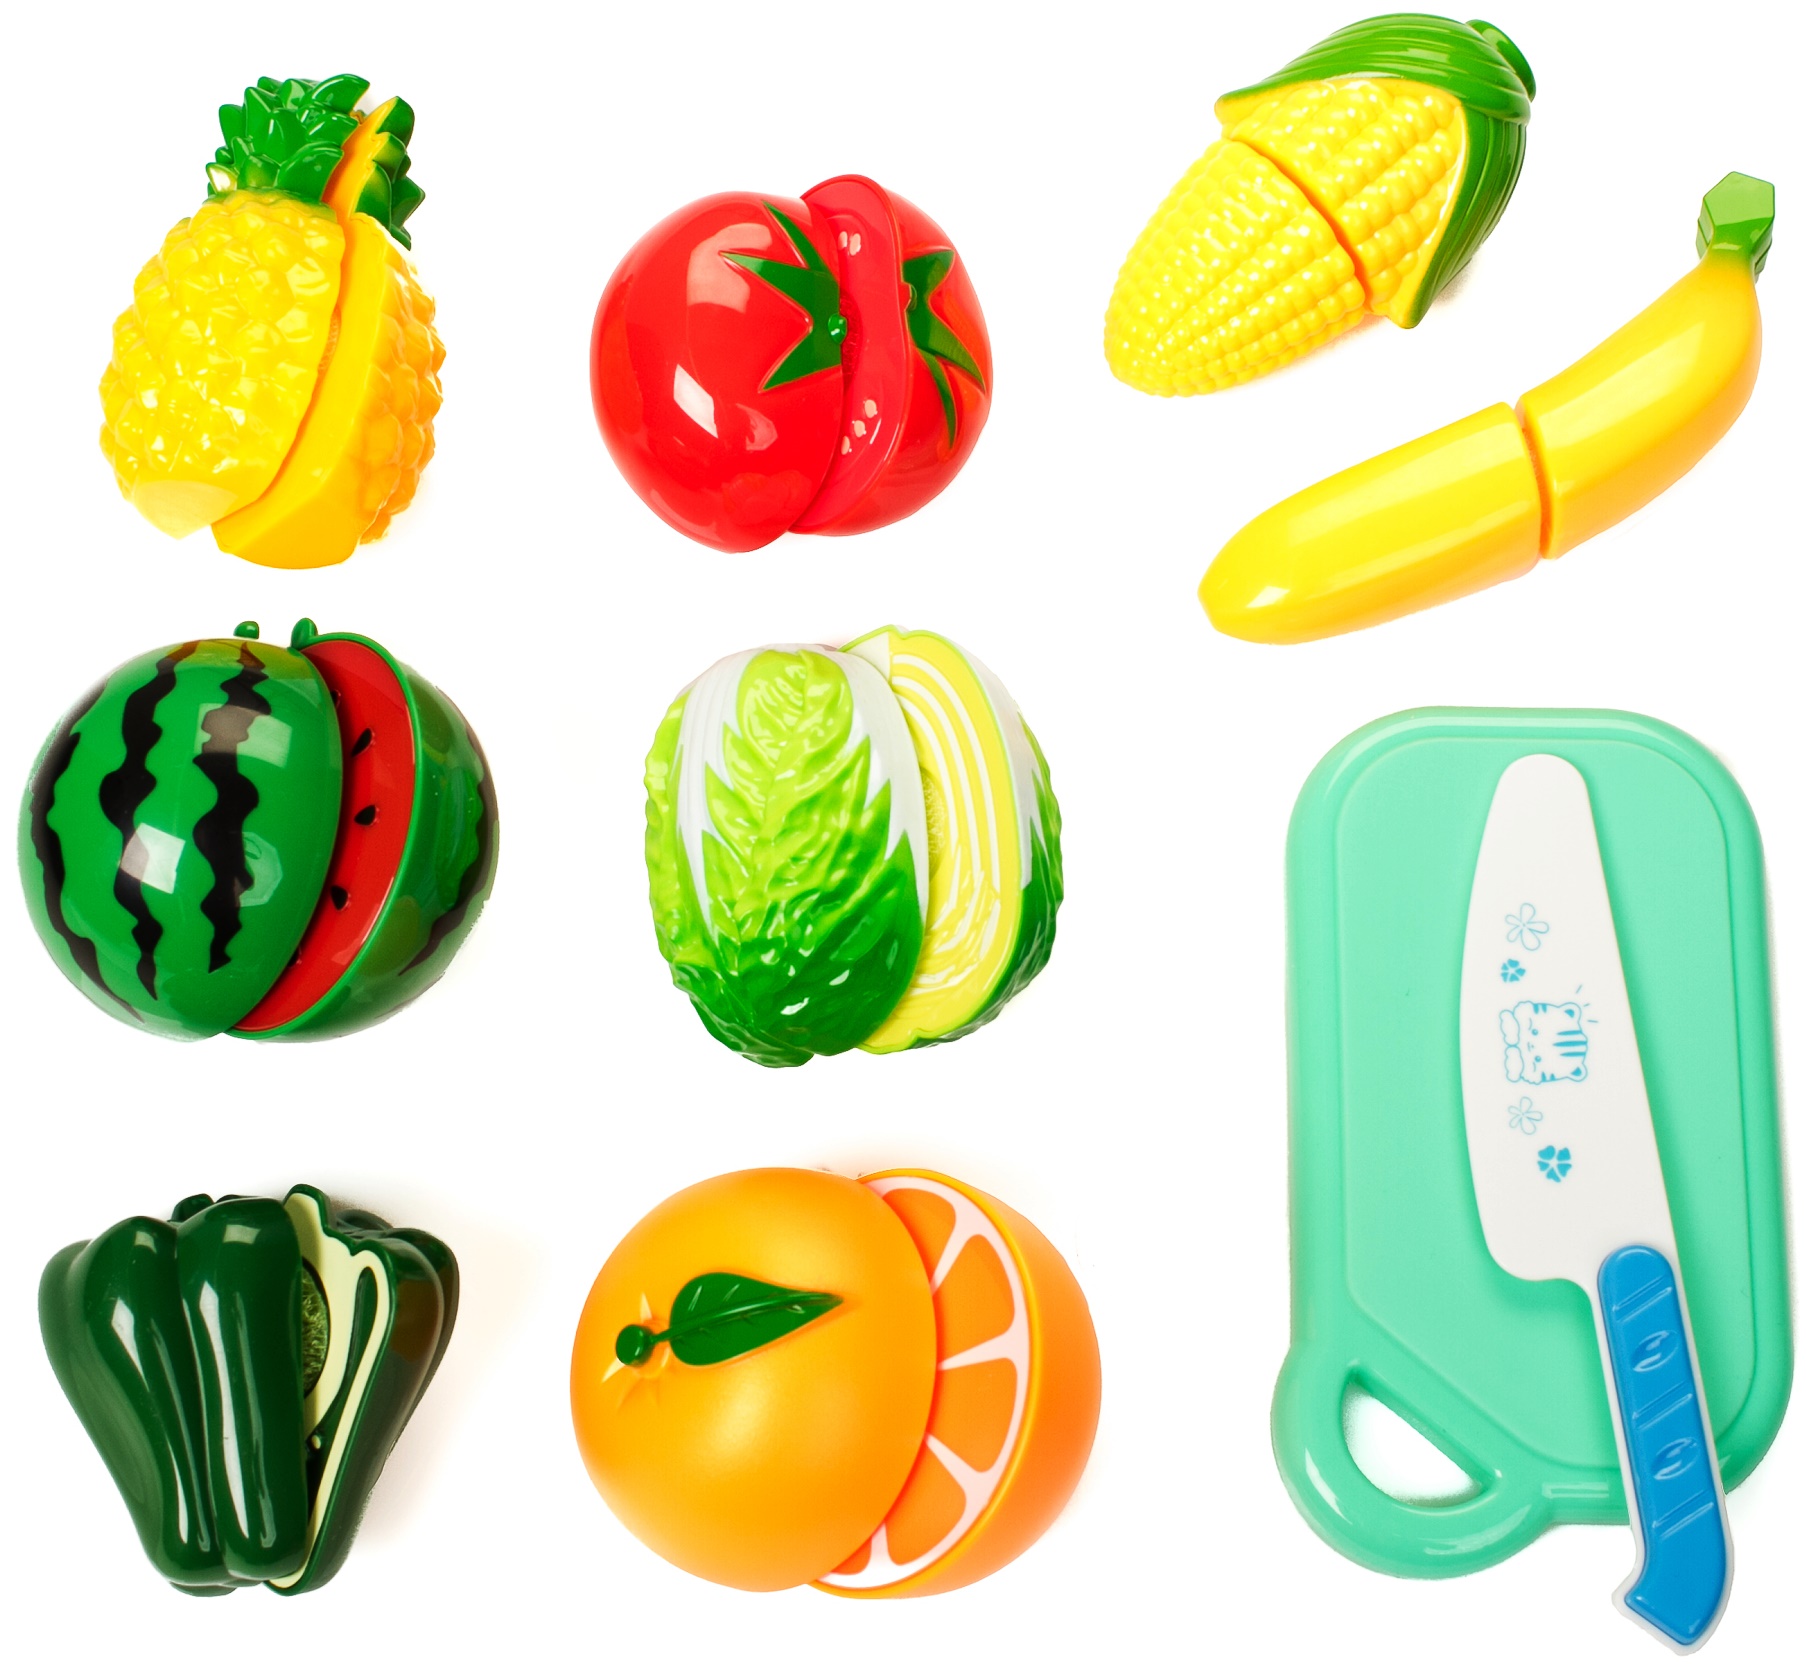 Овощи фрукты нарезки велкро кухня магазин серии Doris кухни интерактивные и аксессуары